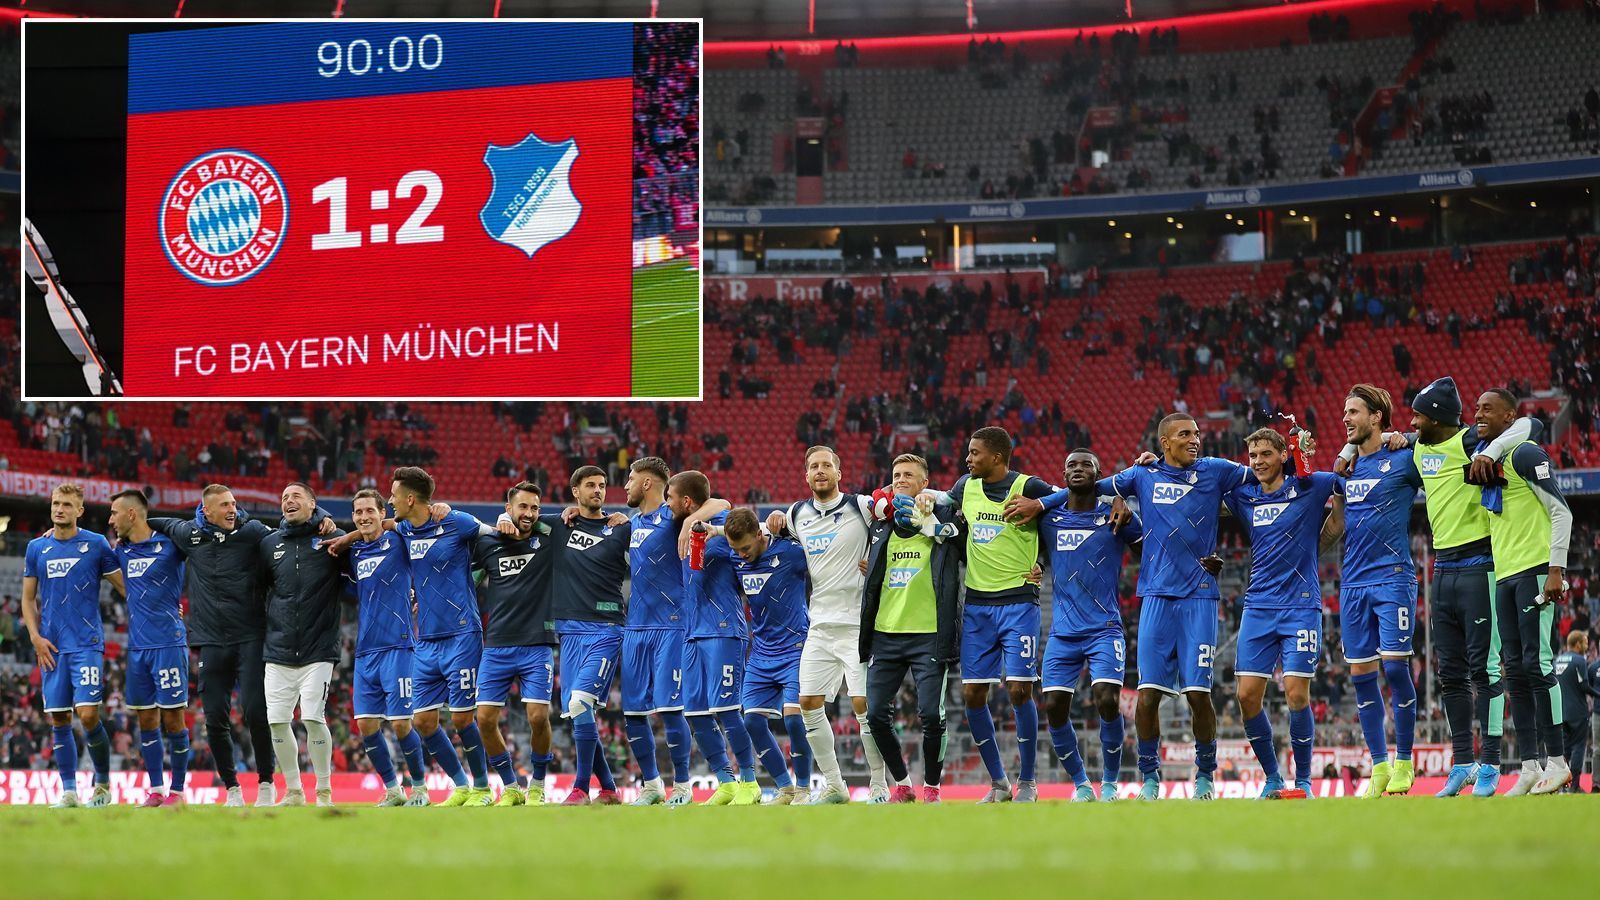 
                <strong>Nach sieben Spieltagen: Mehr Auswärtssiege als je zuvor</strong><br>
                An den ersten sieben Bundesliga-Spieltagen der Saison 2019/20 waren die Auswärtsmannschaften so erfolgreich wie nie zuvor in der Liga-Geschichte! 25 Mal gingen die Gäste bislang auf fremdem Platz als Sieger hervor, damit wurde der bisherige Rekord mit je 24 Auswärtssiegen nach sieben Spieltagen aus den Spielzeiten 2011/12 und 2015/16 gebrochen. Damit gab es bislang in der Saison 2019/20 tatsächlich mehr Auswärts- als Heimsiege (bislang 23). Am 6. Spieltag gab es zudem bereits einen weiteren Bundesliga-Rekord in ähnlicher Richtung, denn gleich acht der neun Begegnungen endeten mit Siegen der Auswärtsmannschaft. So viele Erfolge der Auswärtsmannschaft gab es zuvor an nur einem Spieltag ebenfalls noch nie. (Quelle: kicker.de)
              